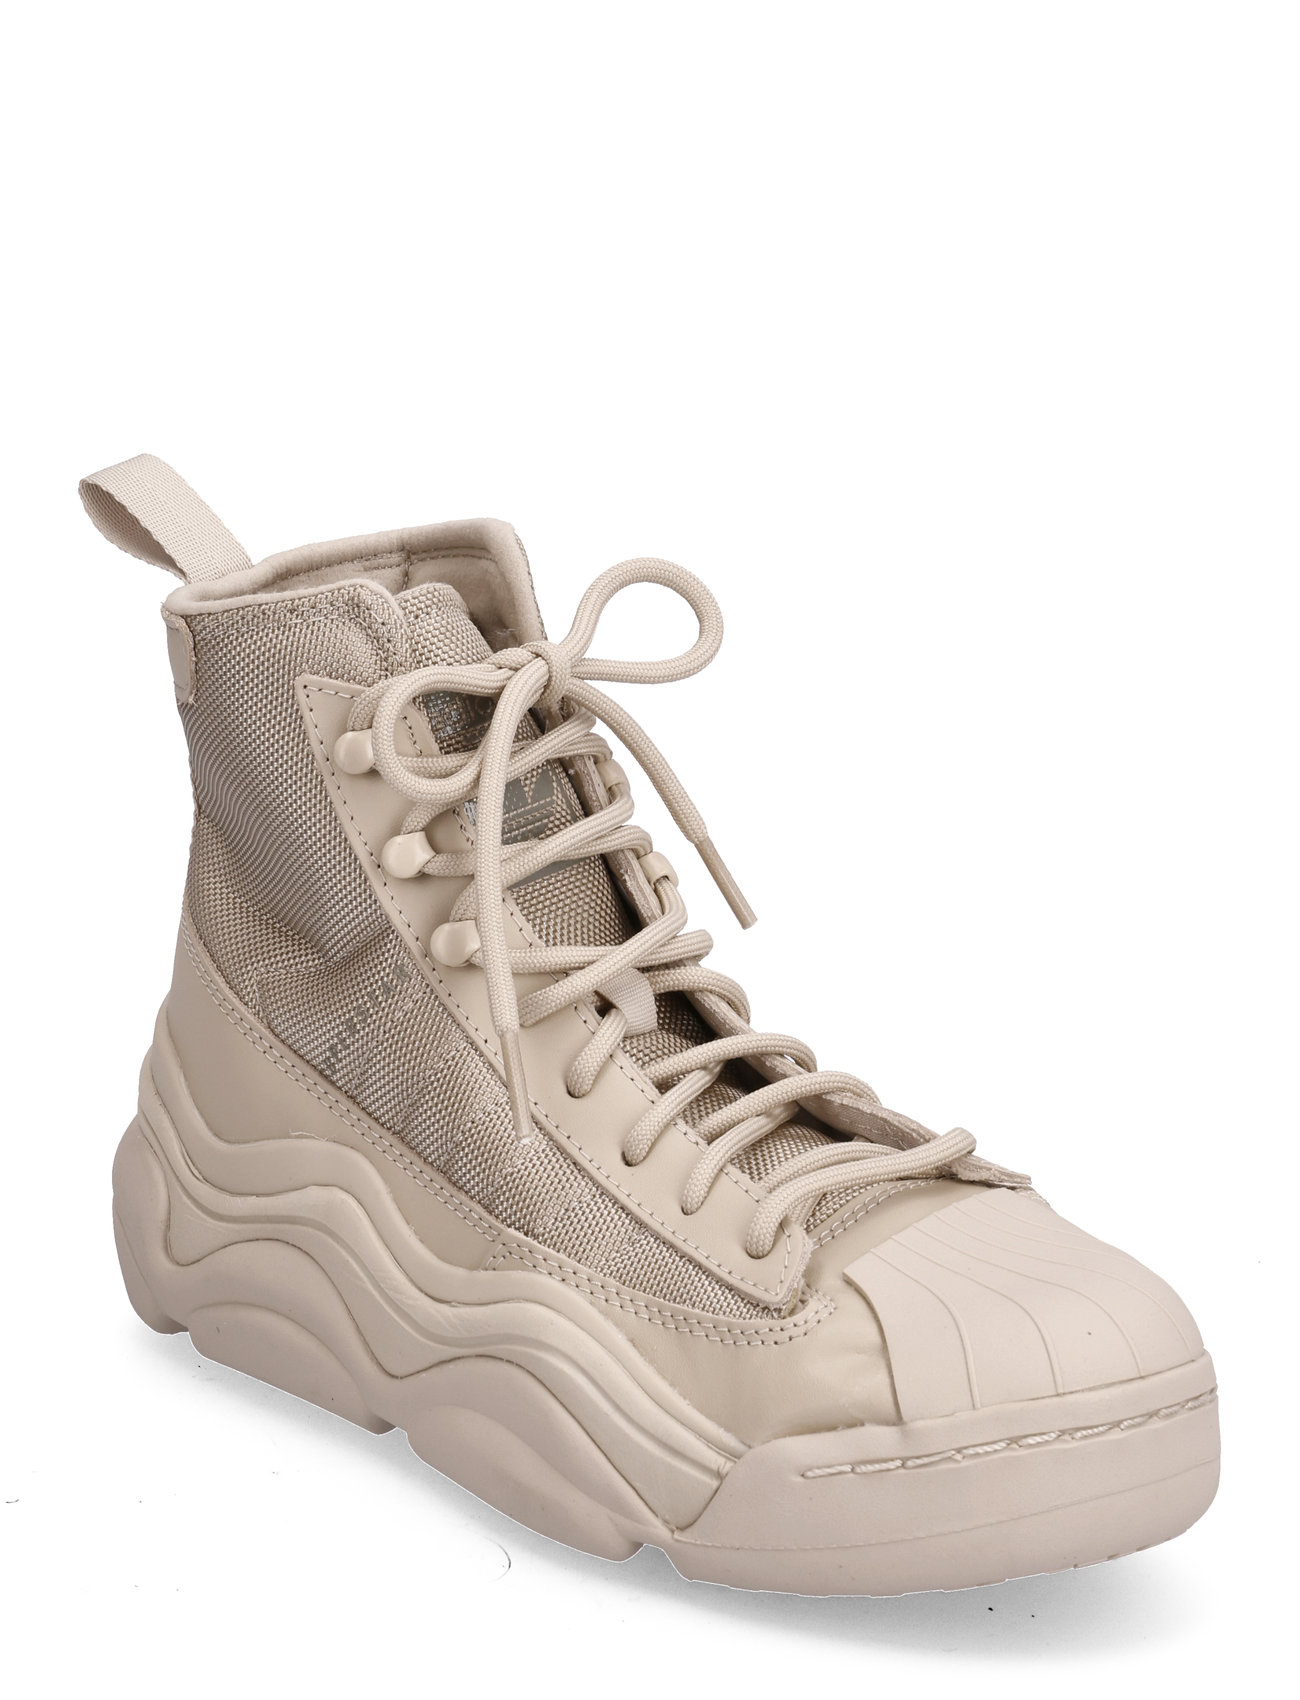 Superstar Millencon Boot Shoes Sport Sneakers High-top Sneakers Beige Adidas Originals